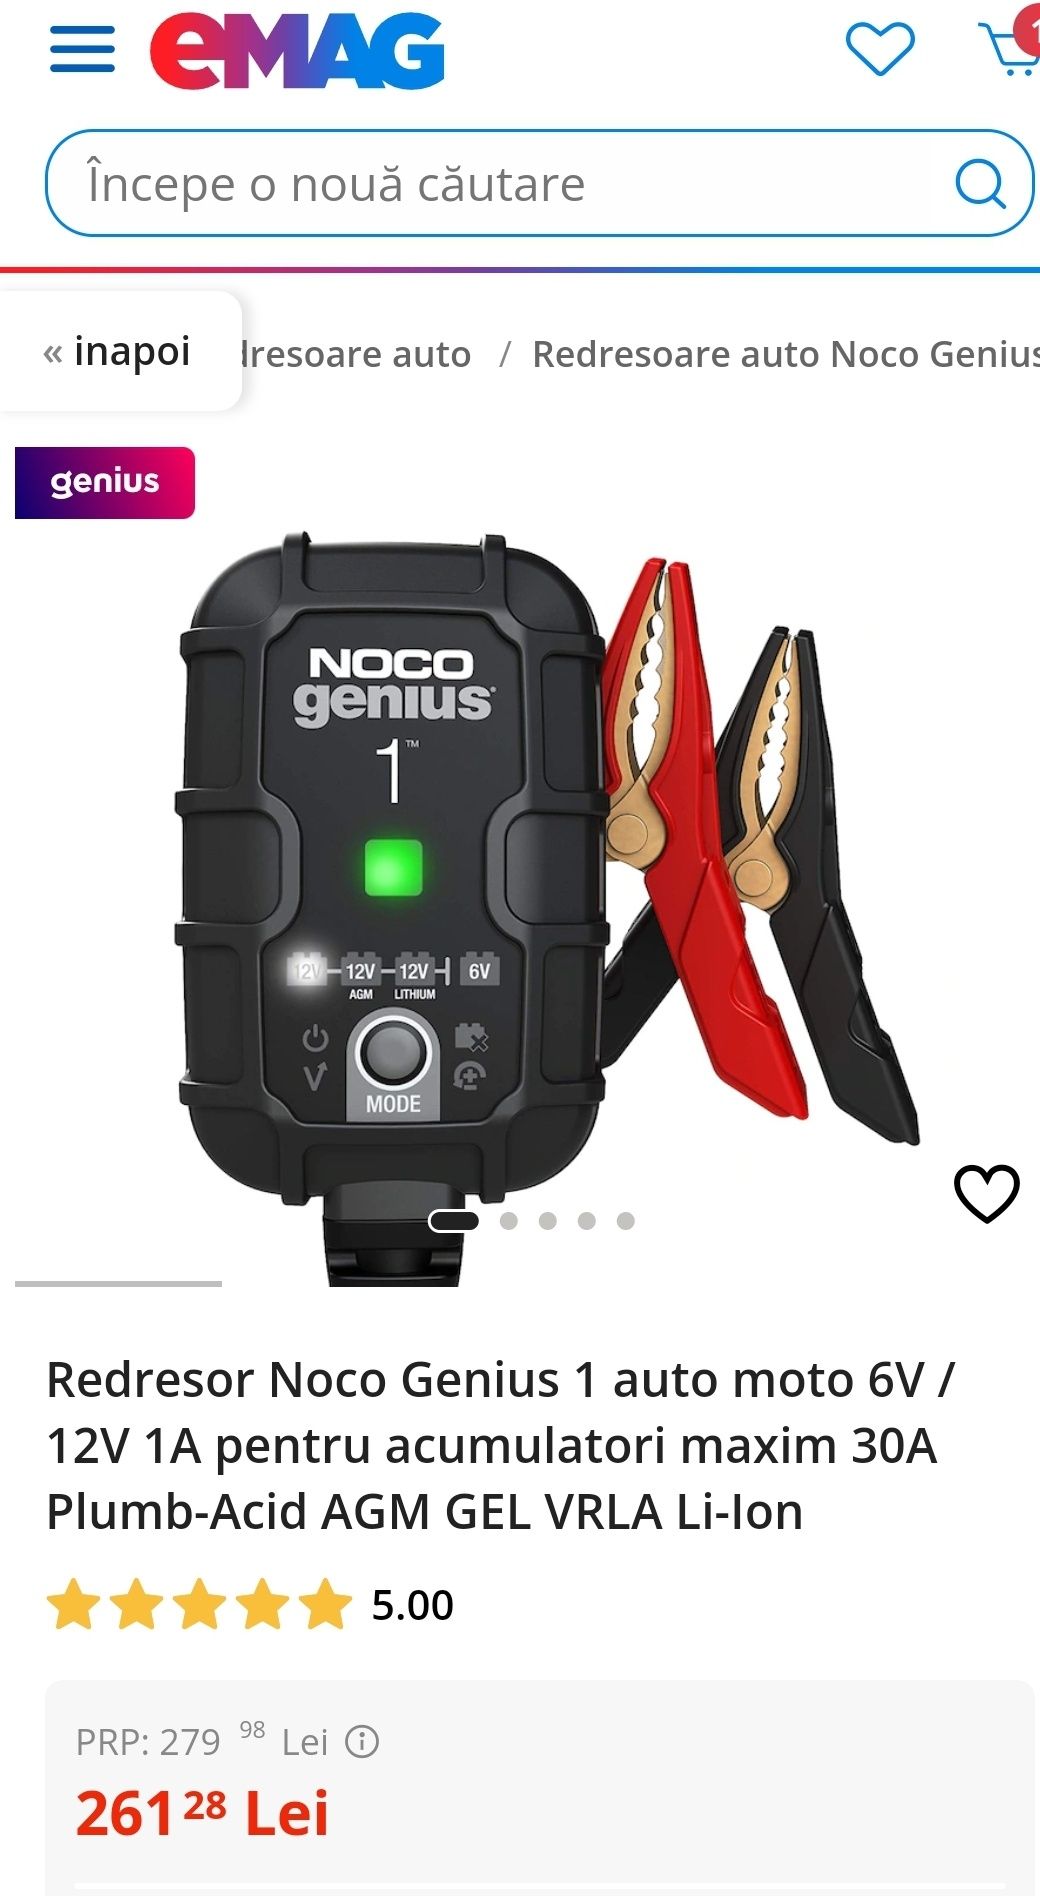 Redresor Noco Genius 1 auto moto 6V / 12V 1A pentru acumulatori maxim